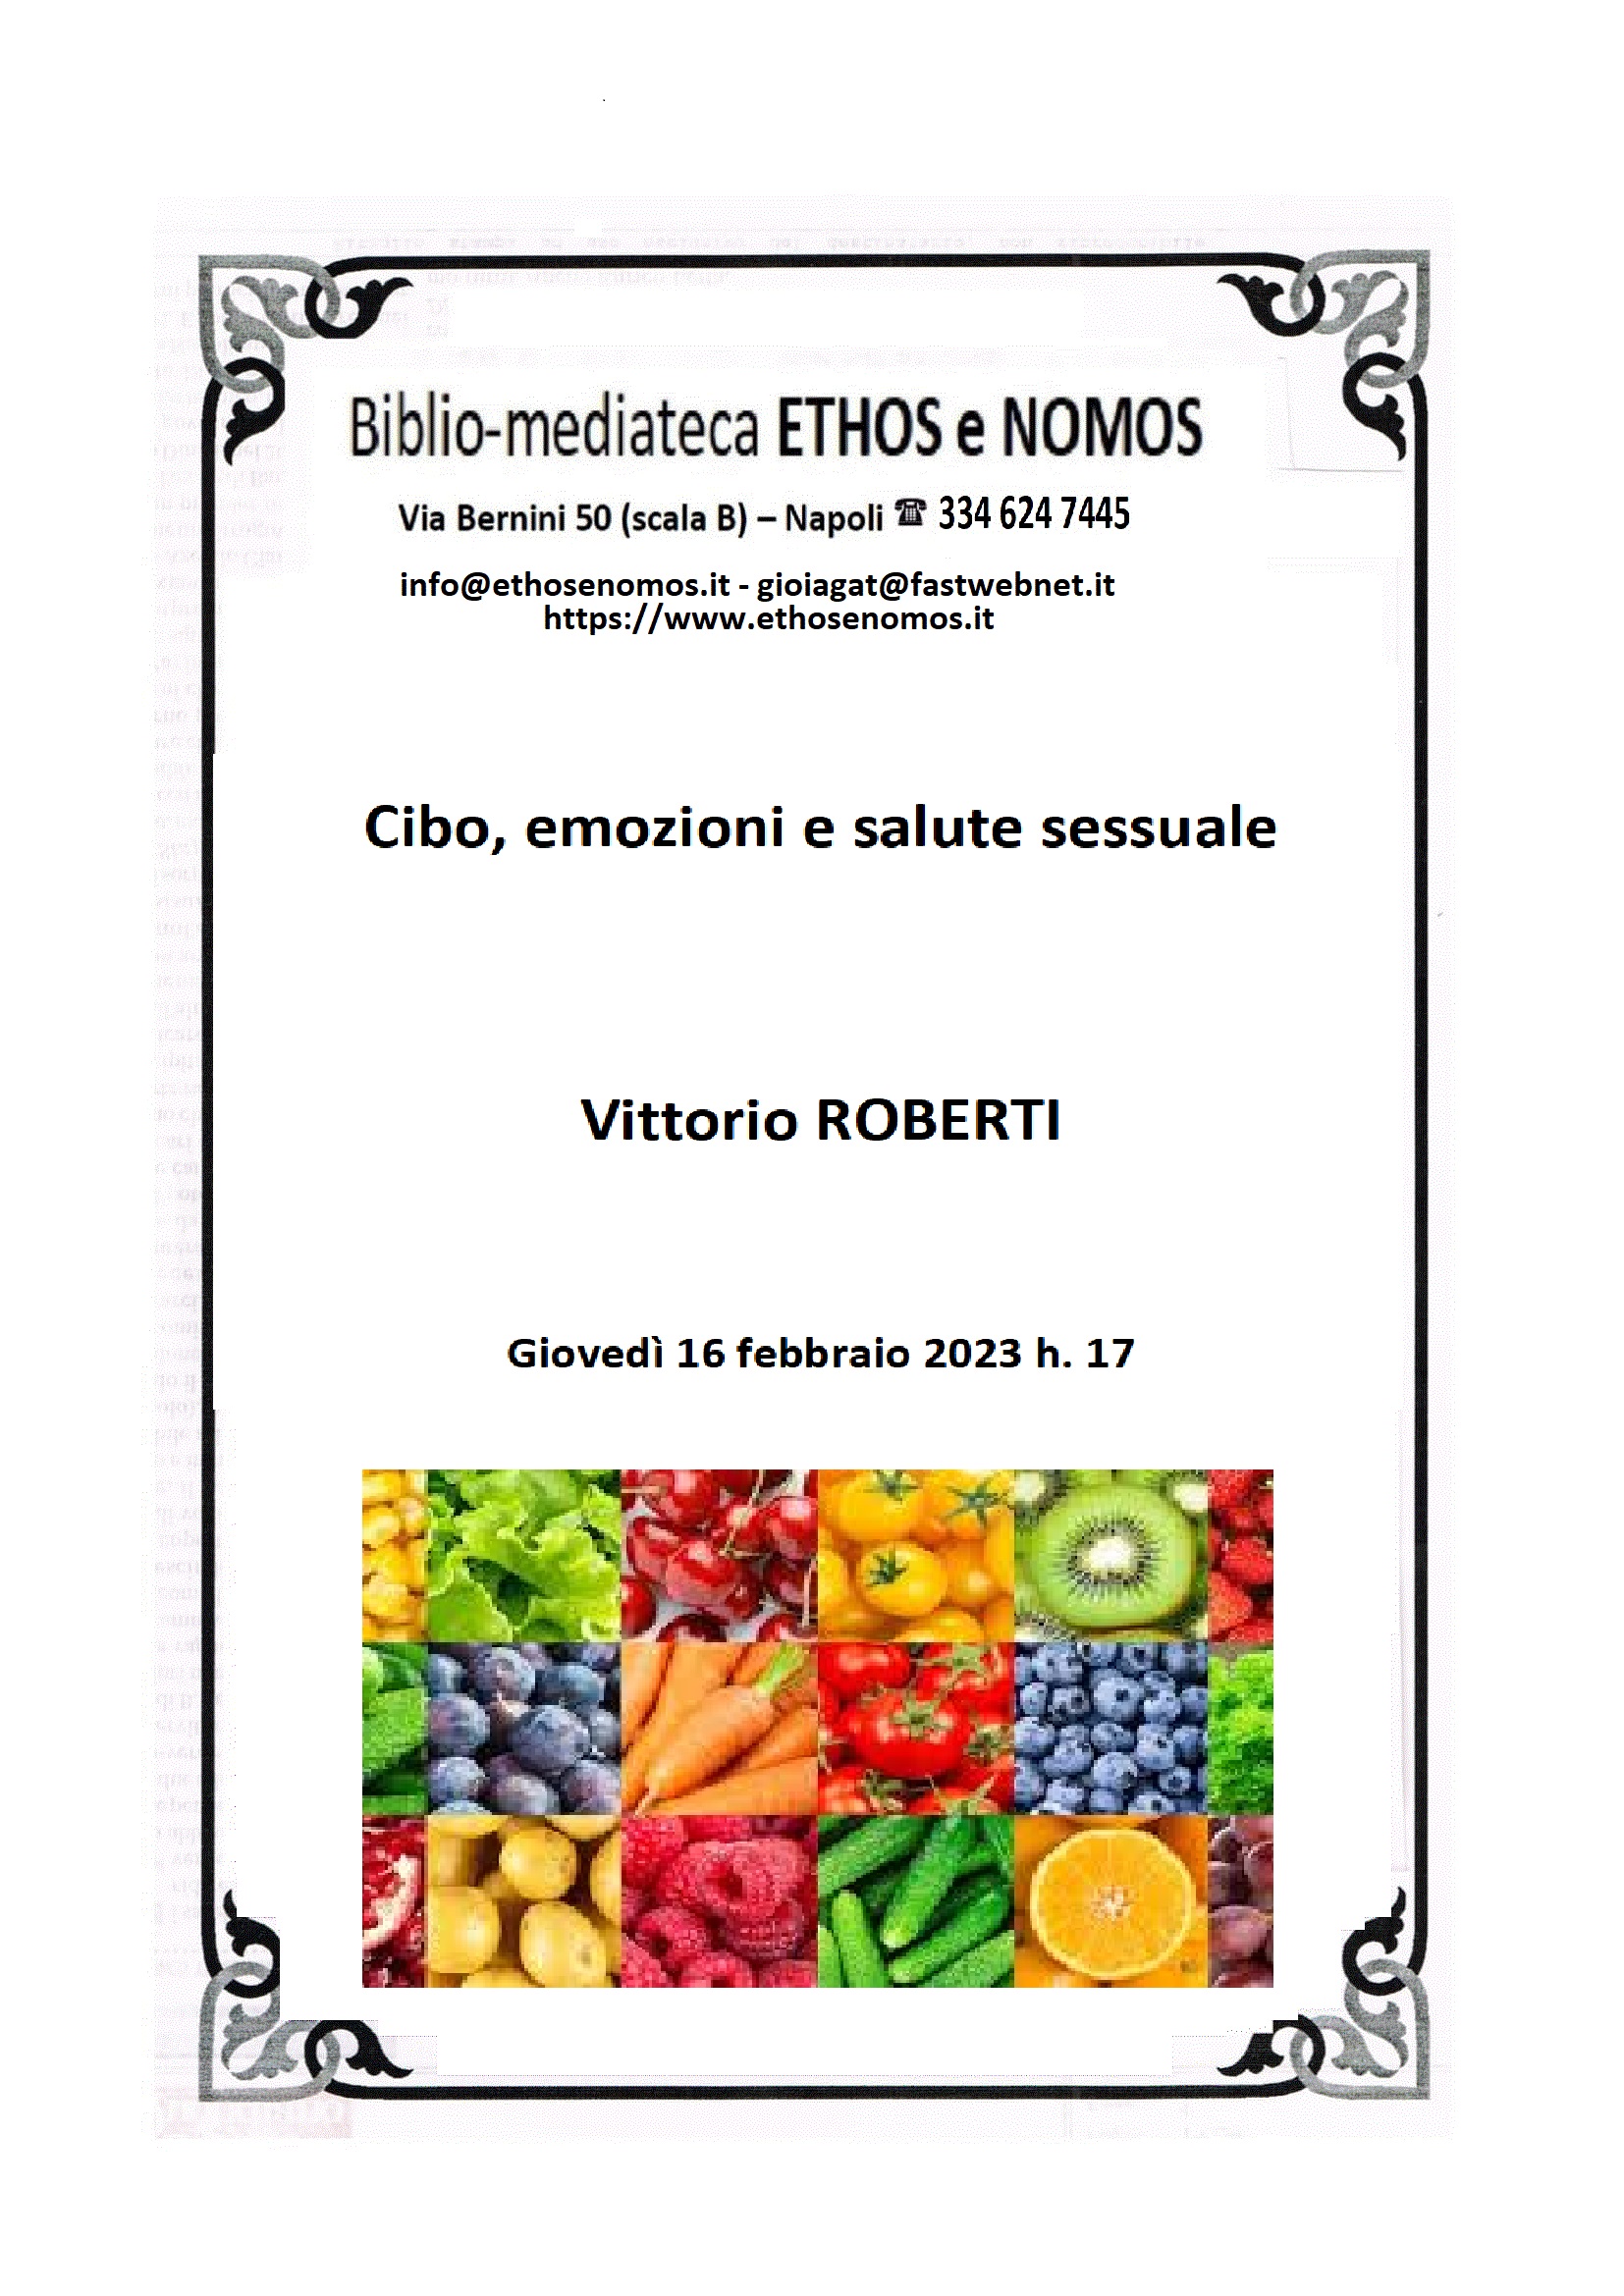 Vittorio ROBERTI  - Cibo, emozioni e salute sessuale